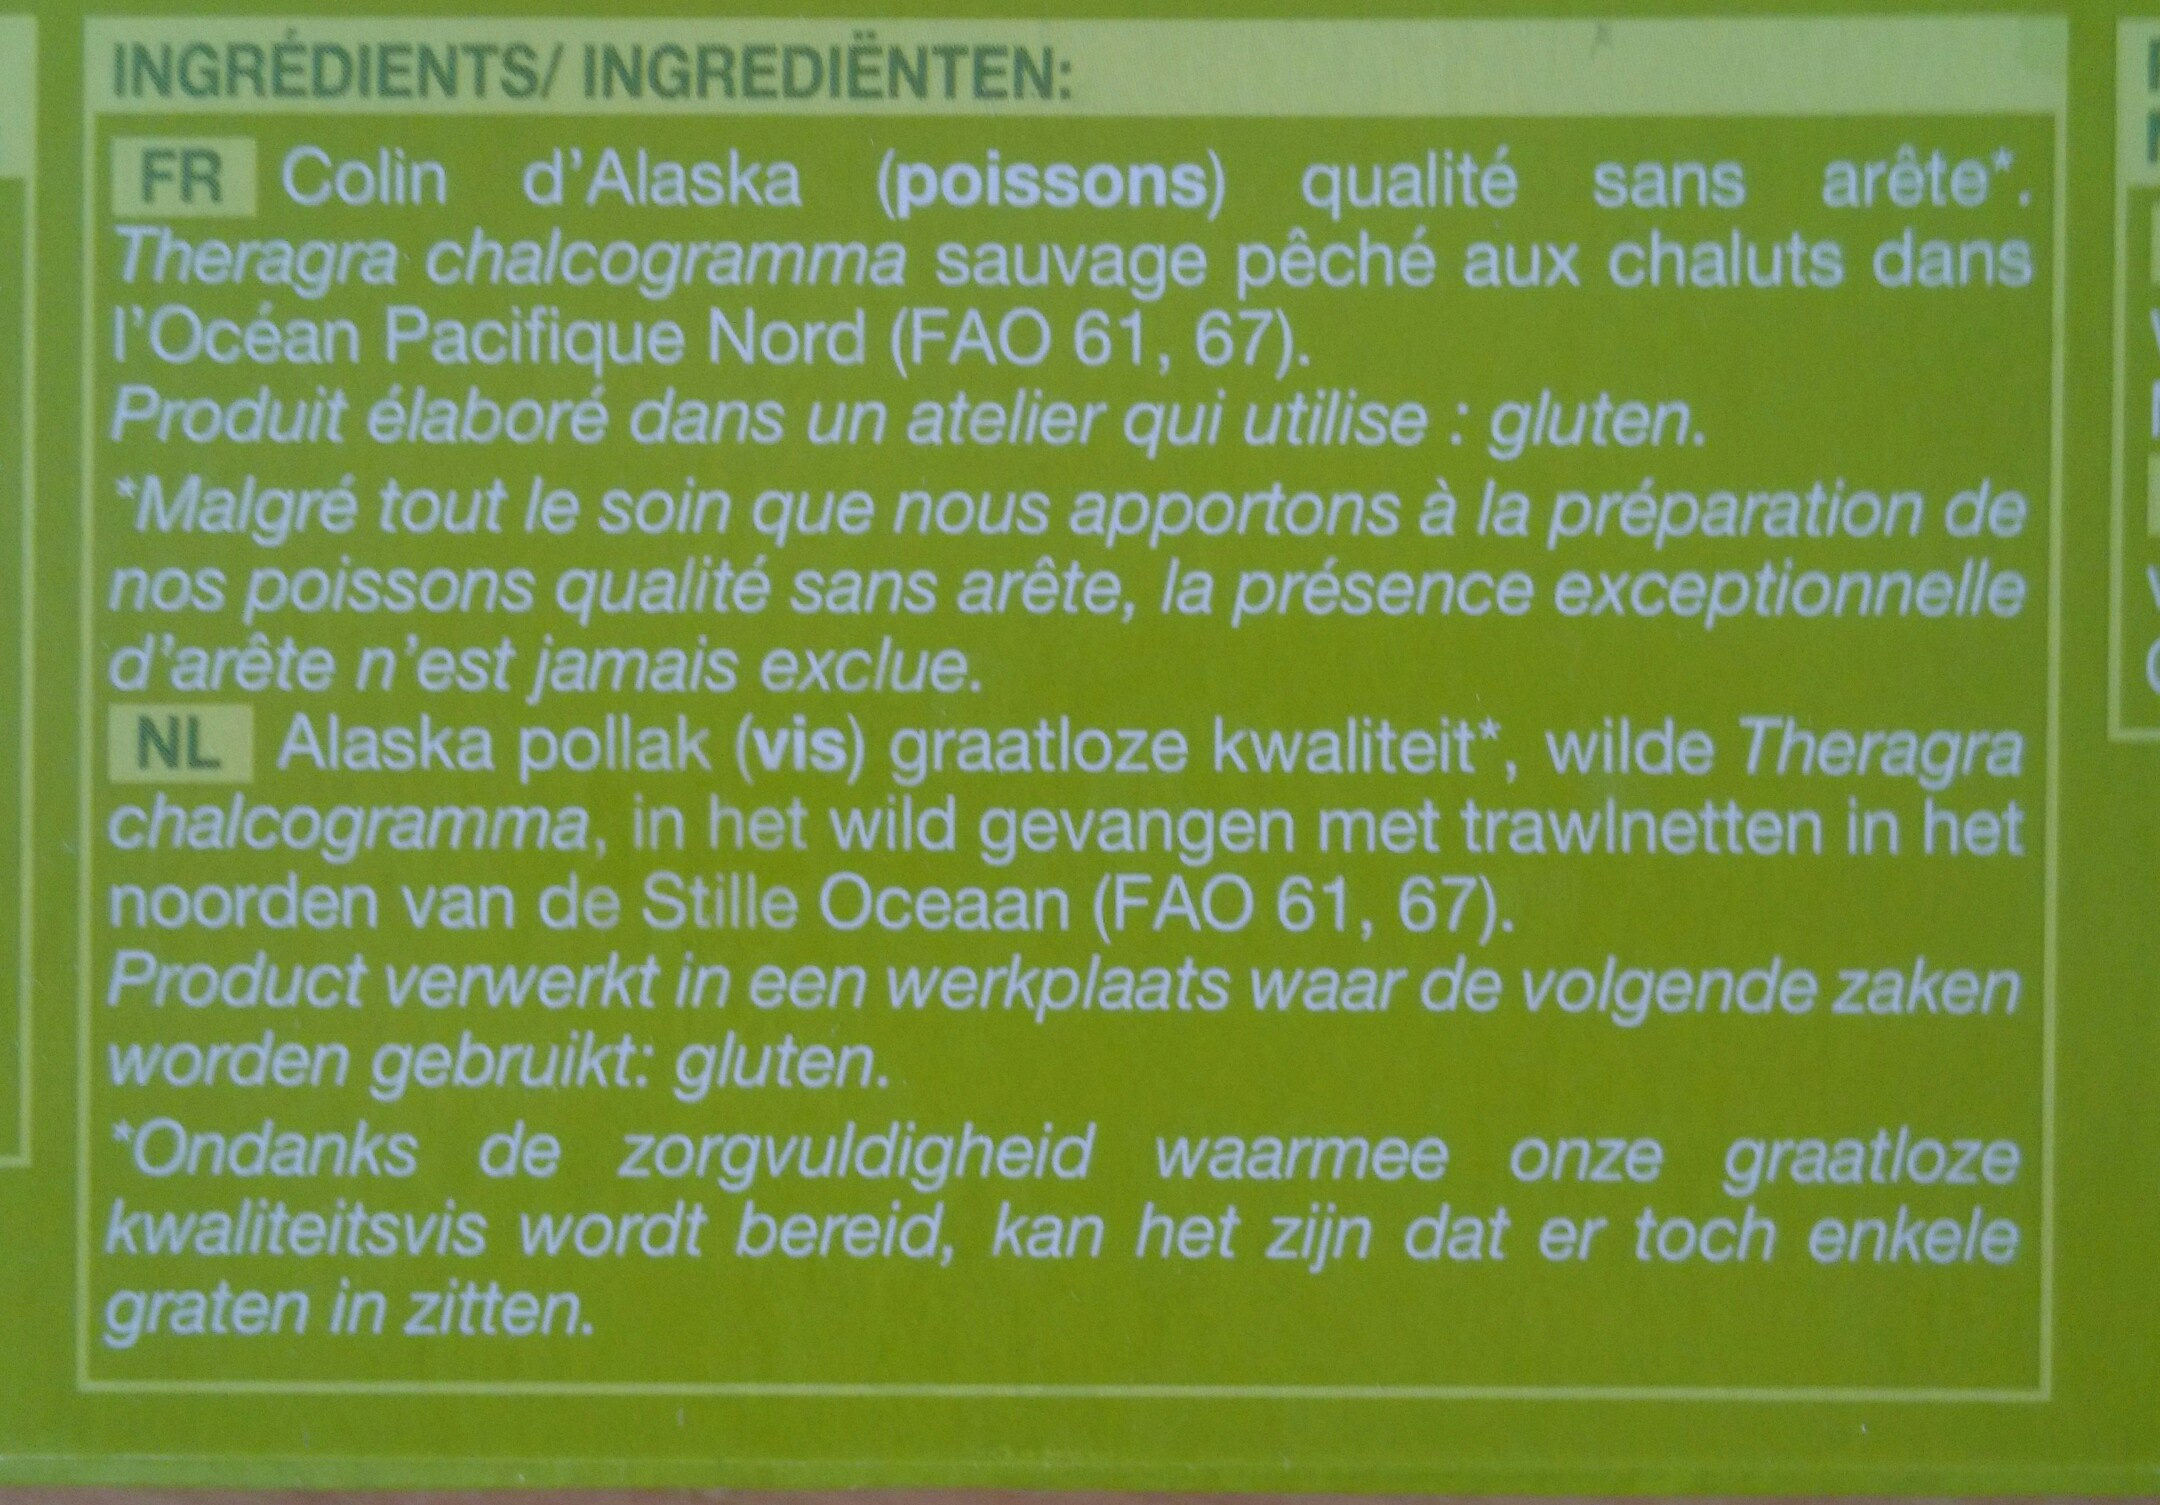 4 tranches de filets de Colin d'Alaska - Ingredients - fr